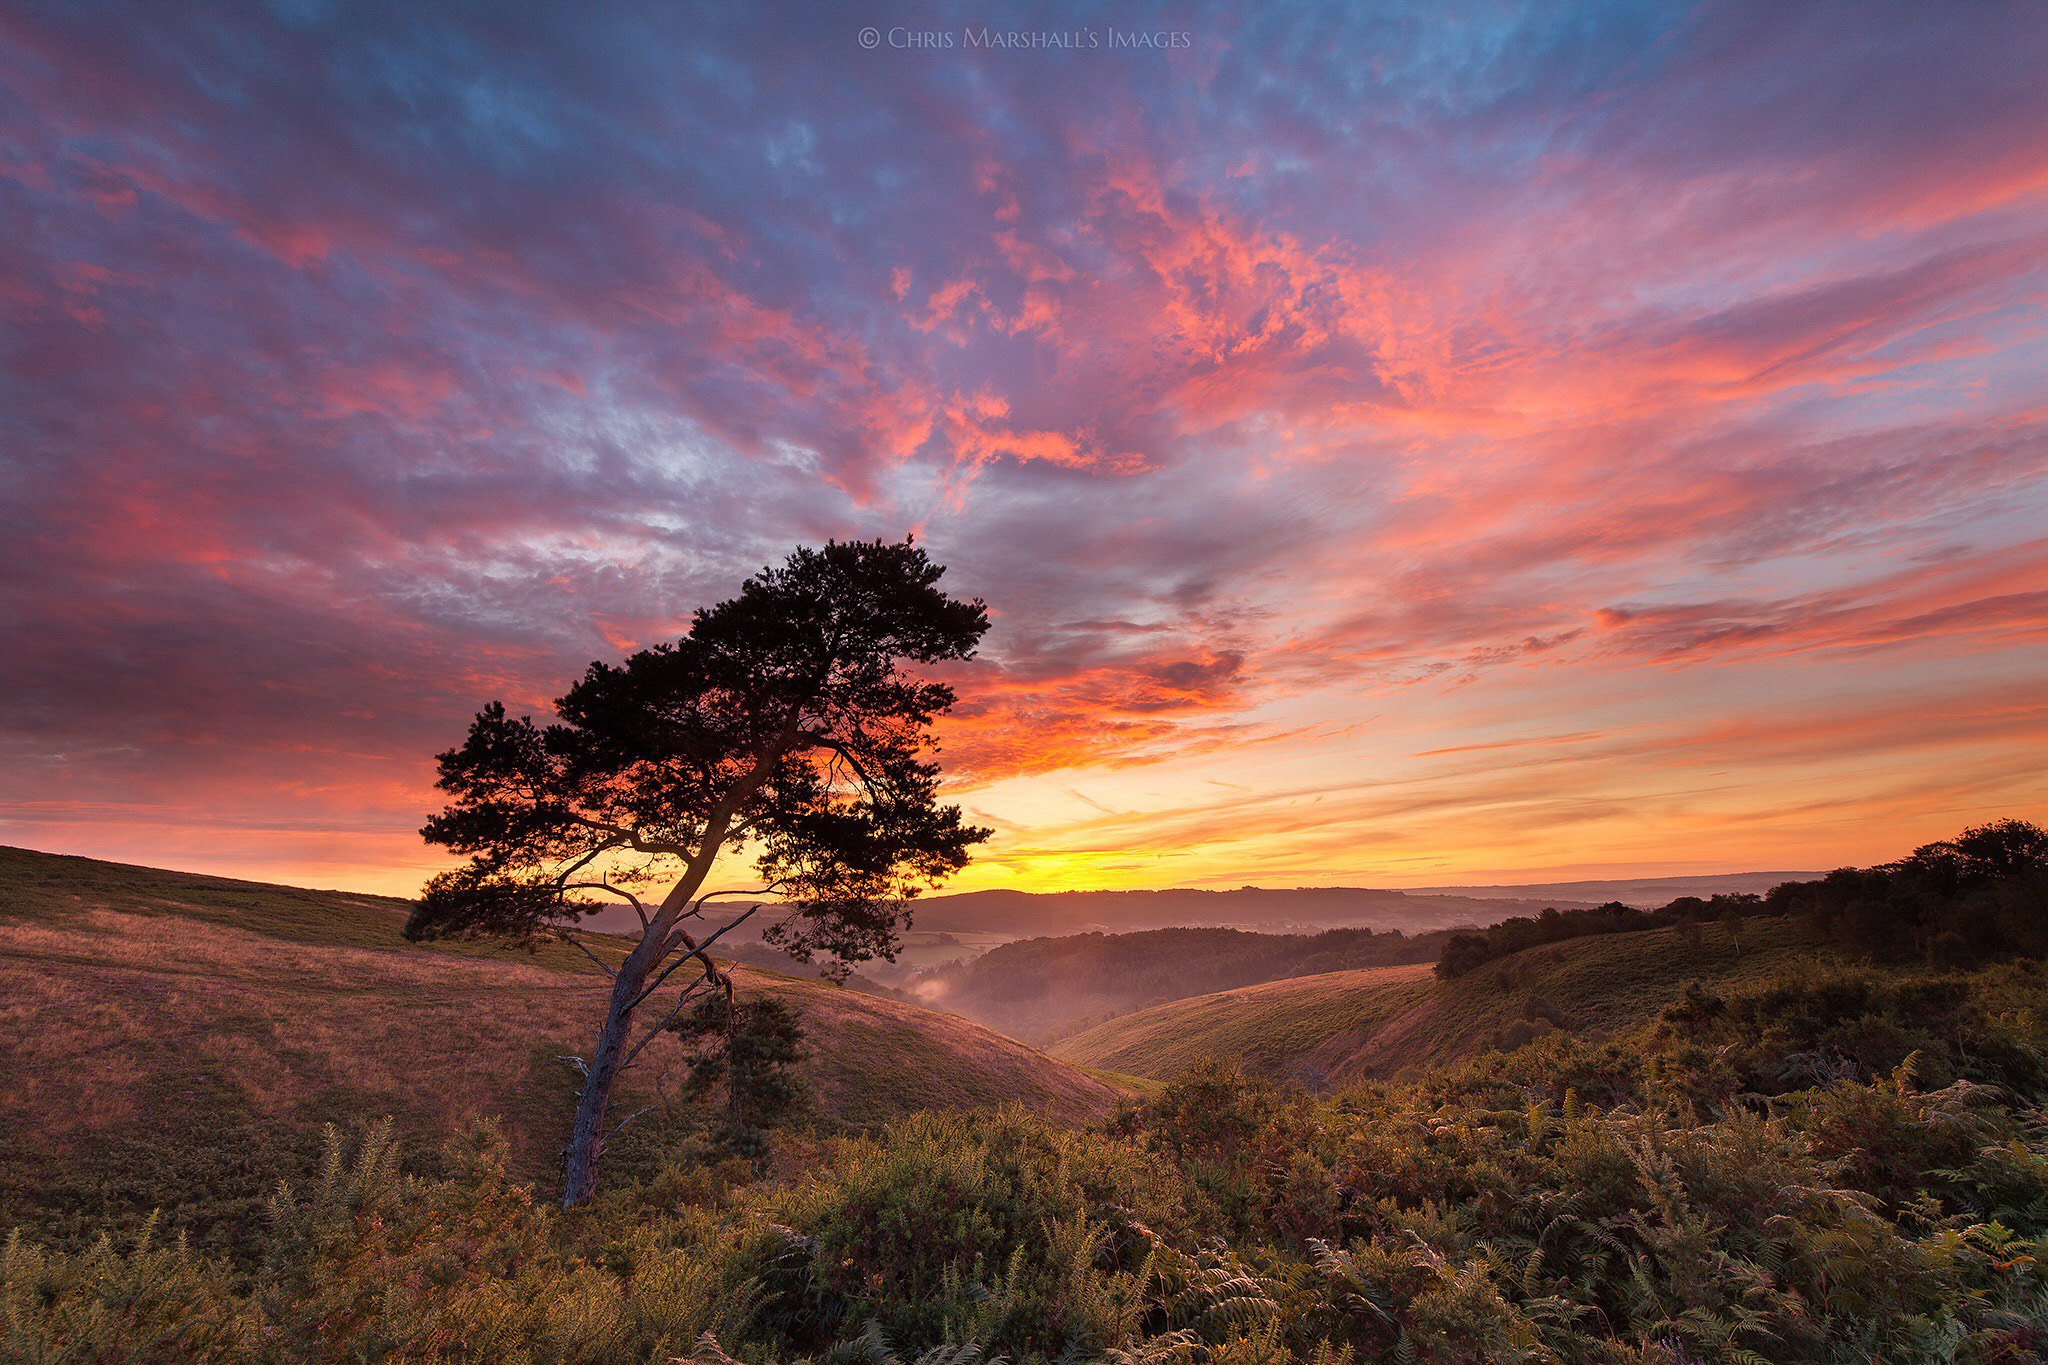 Wallpapers Dartmoor National Park sunset hills on the desktop